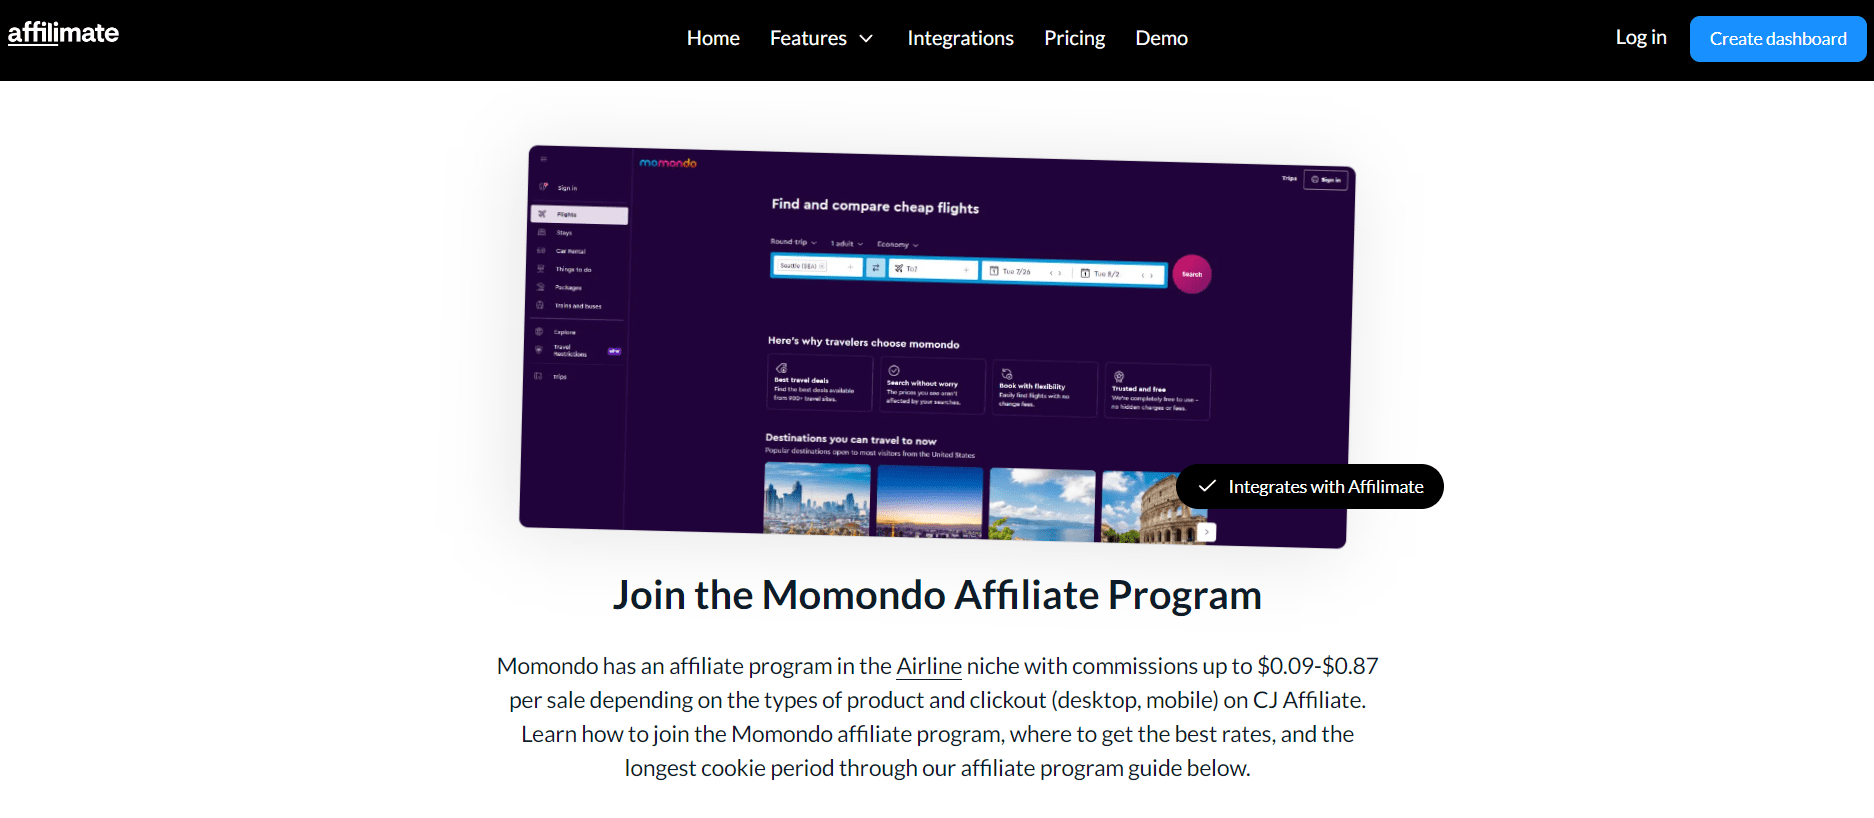 Momondo's affiliate program